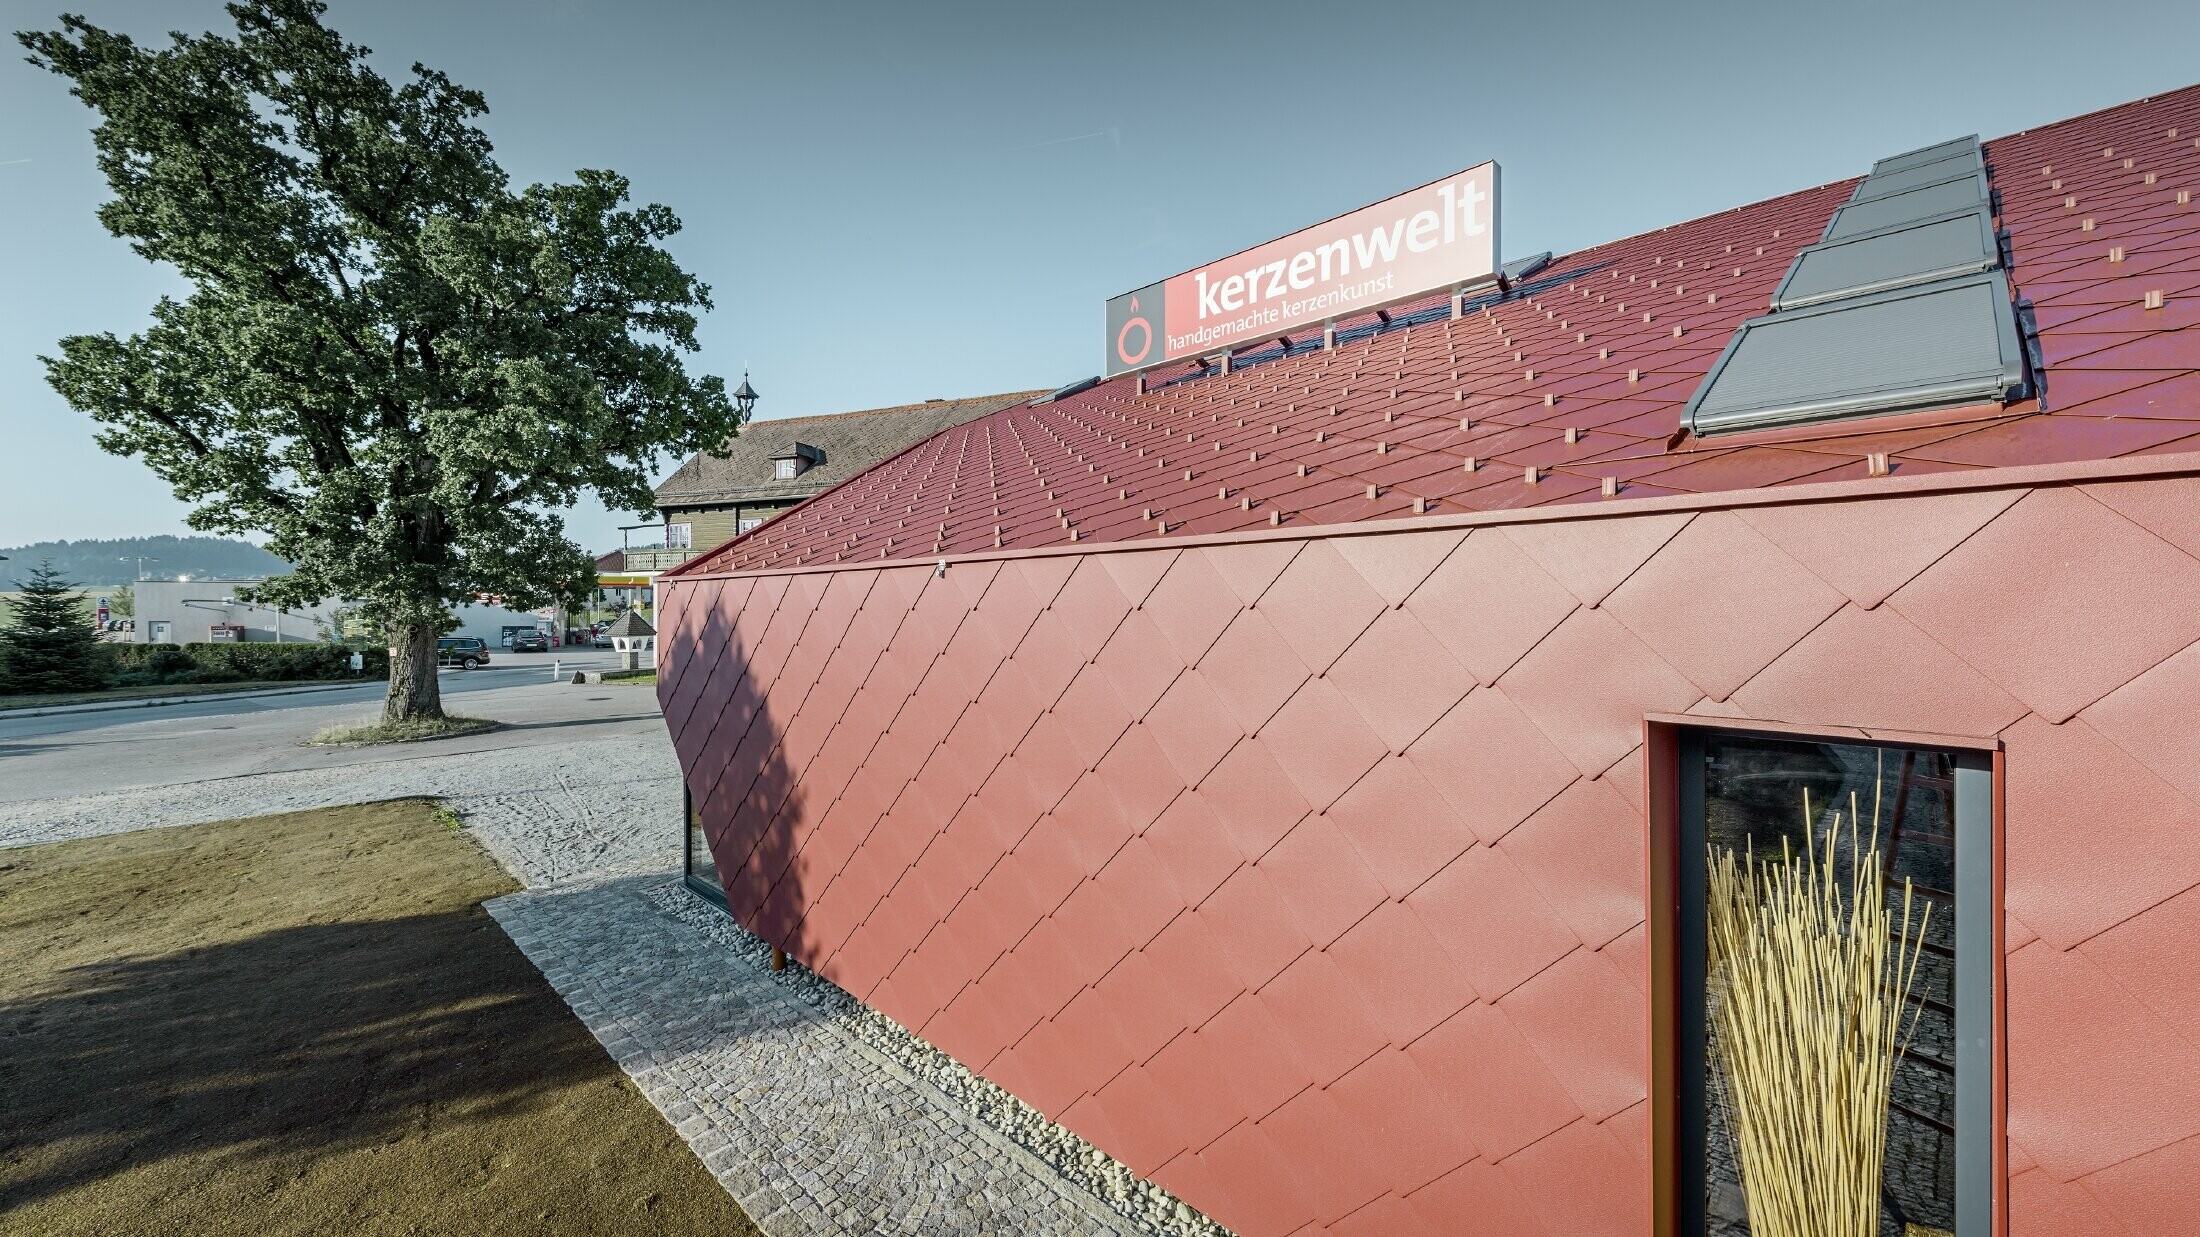 Kerzenwelt i Schlägl täcktes helt med romber från PREFA. Tak och fasadbeklädnad utfördes med romber 44 × 44 i oxidrött.